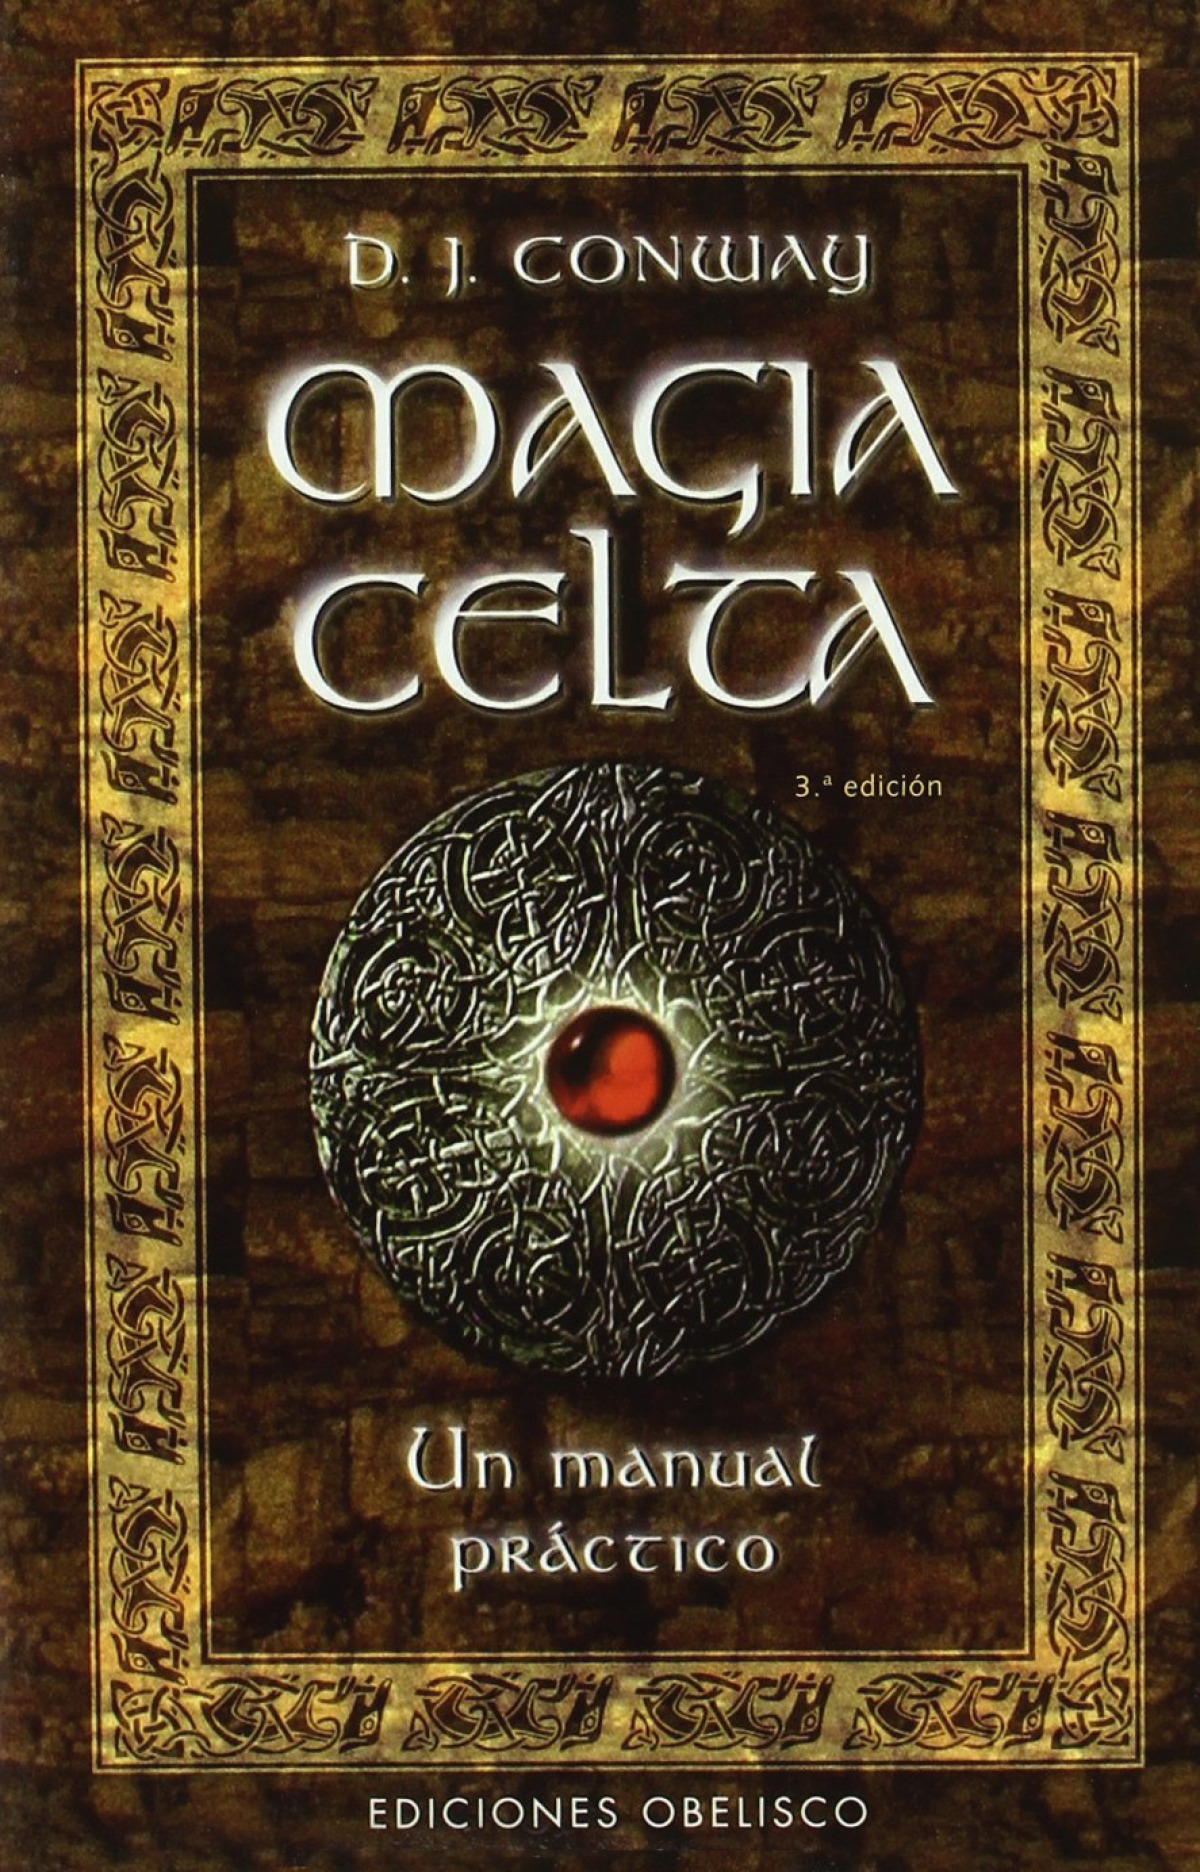 Magia celta-un manual practico - Conway, D. J.